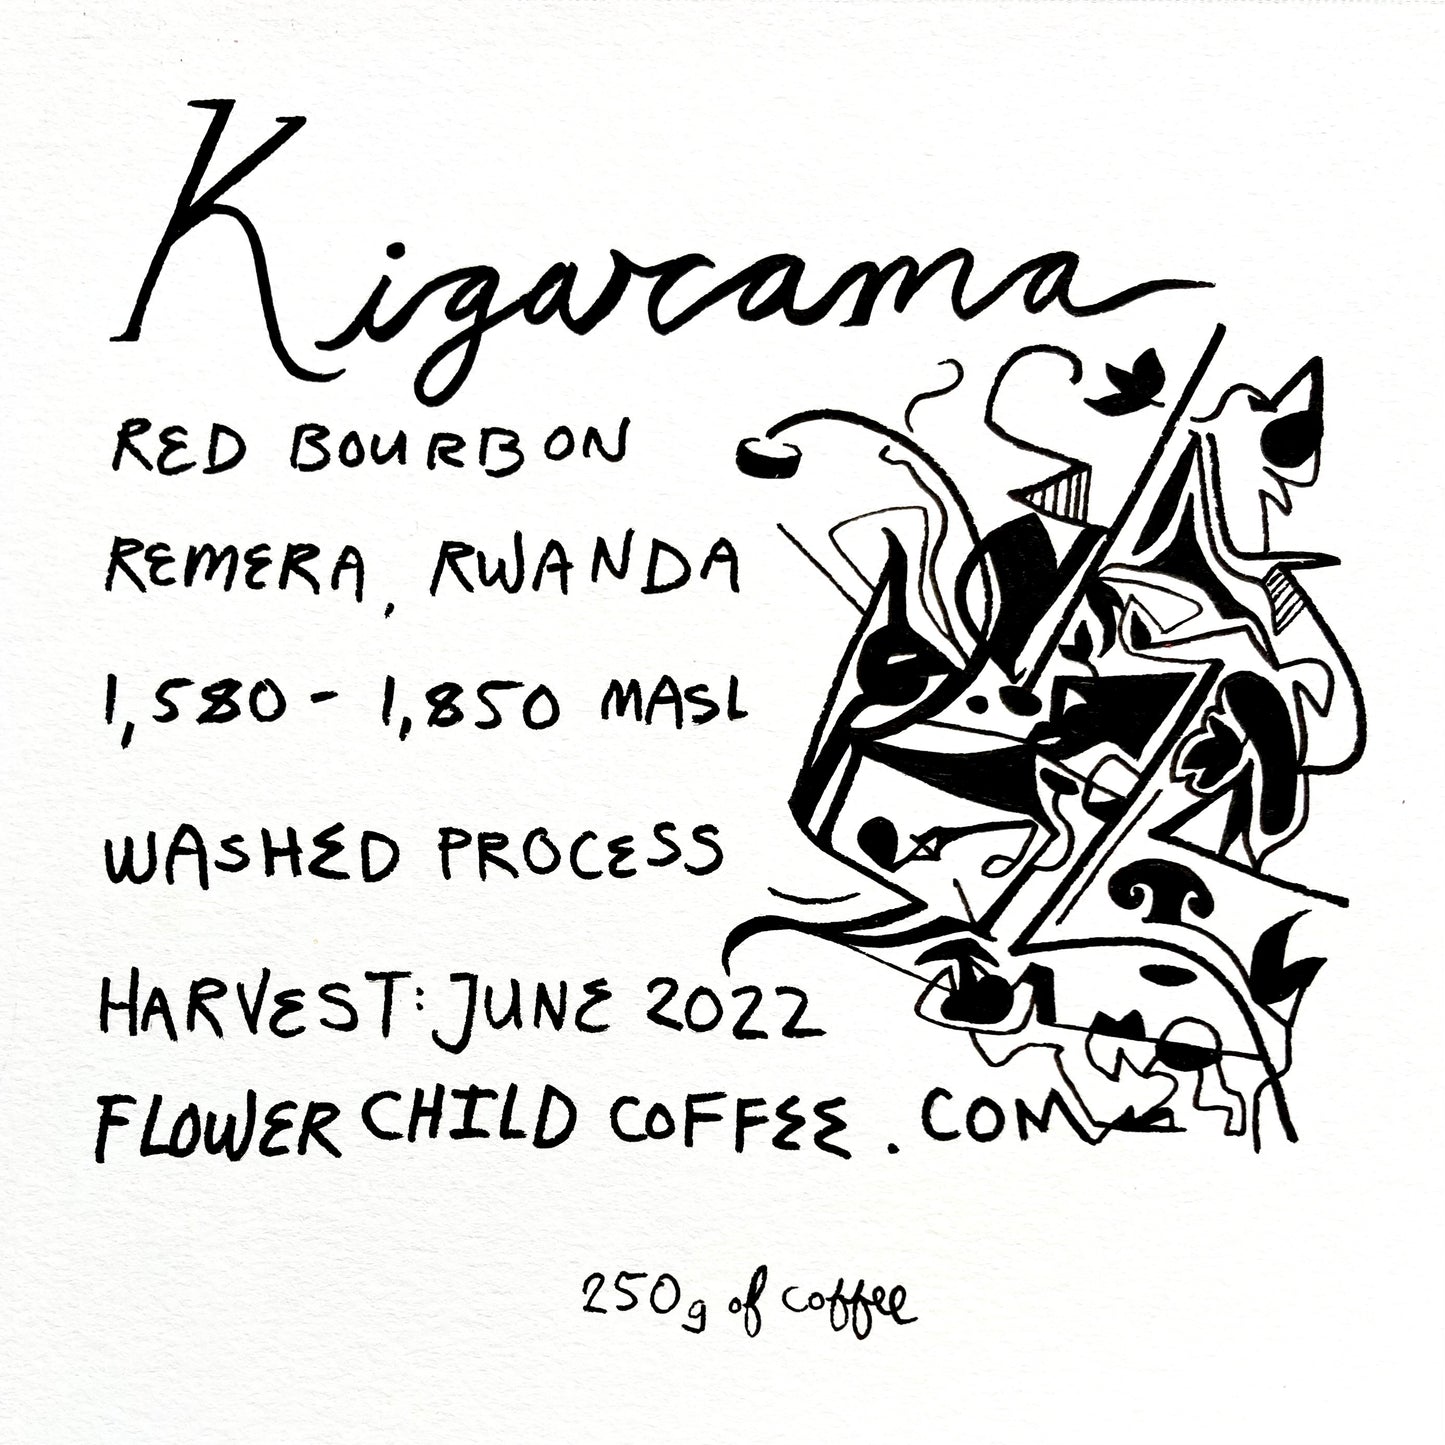 Kigarama